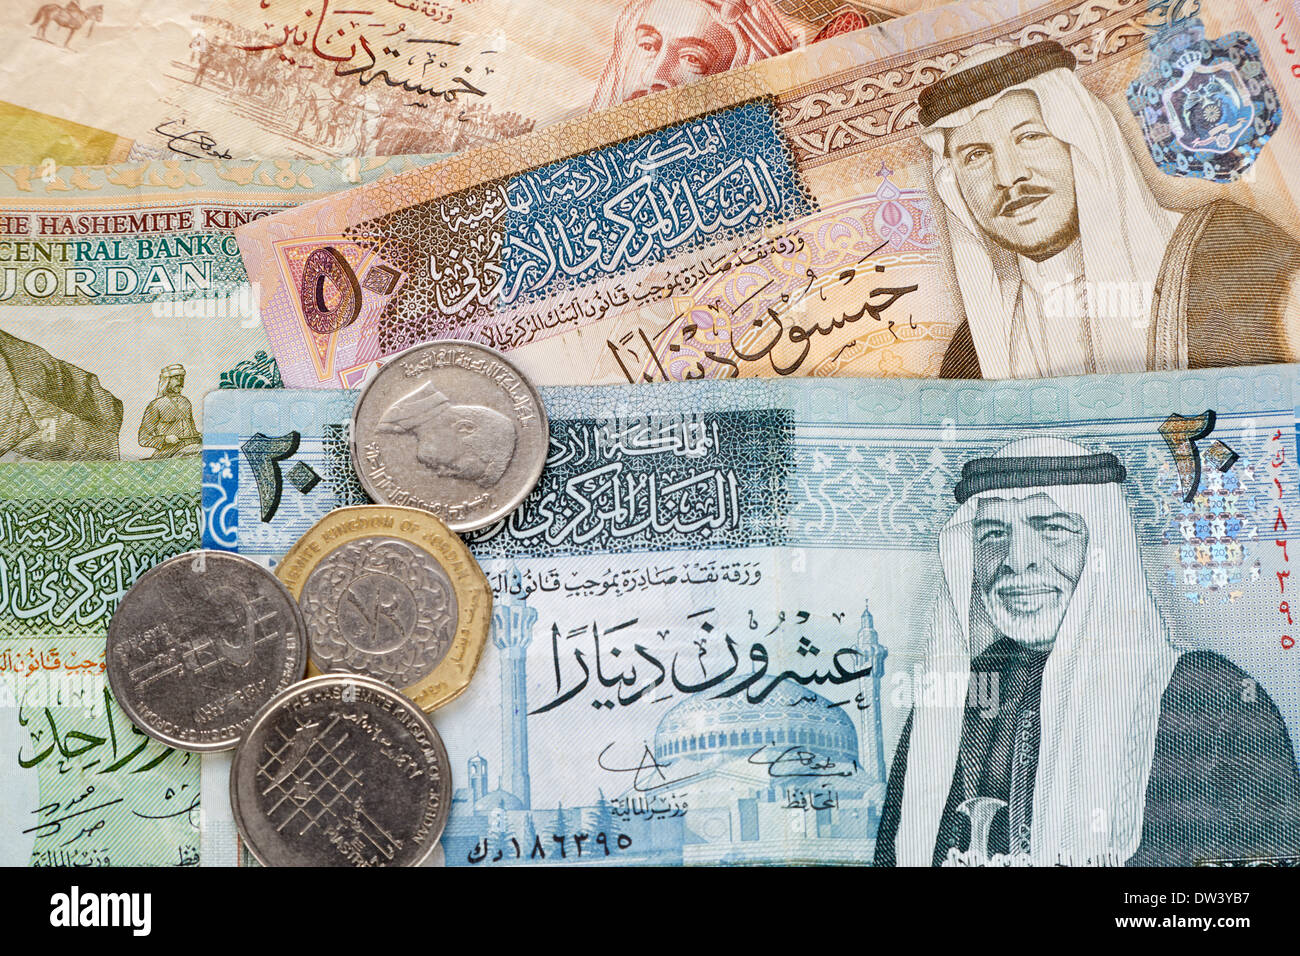 Jordanian dinar hi-res stock photography and images - Alamy